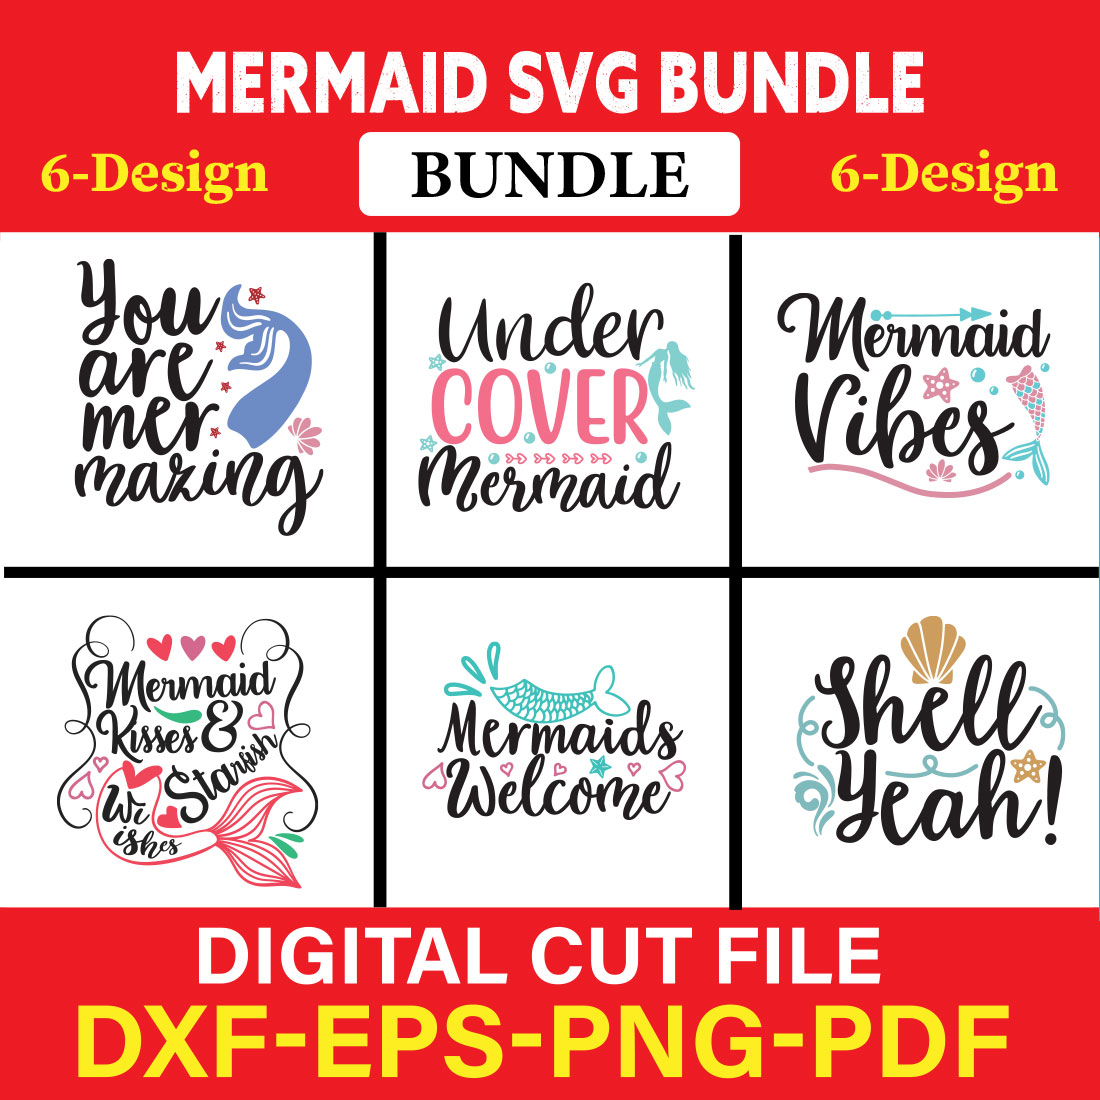 Mermaid T-shirt Design Bundle Vol-2 cover image.